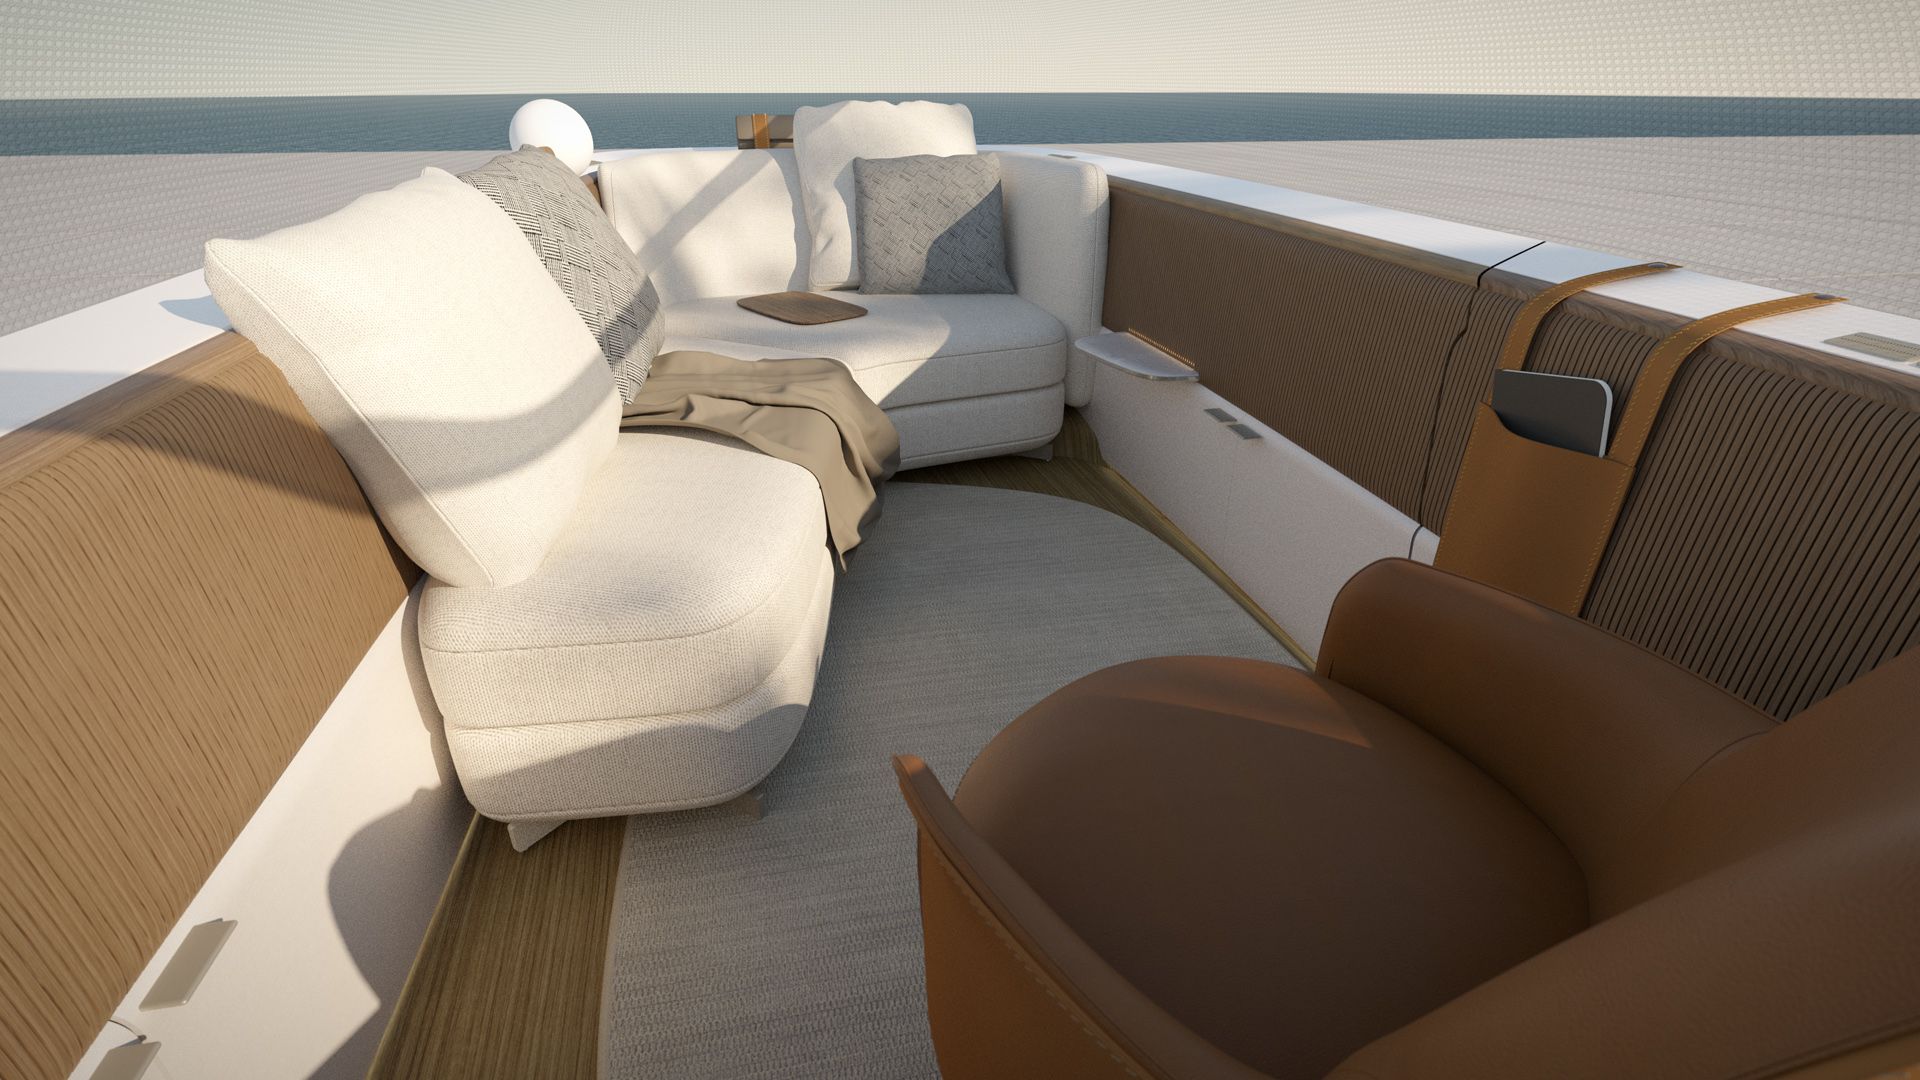 Le design intérieur par Poliform pour l'Audi urbansphere concept offre un habitacle confortable avec divers sièges.